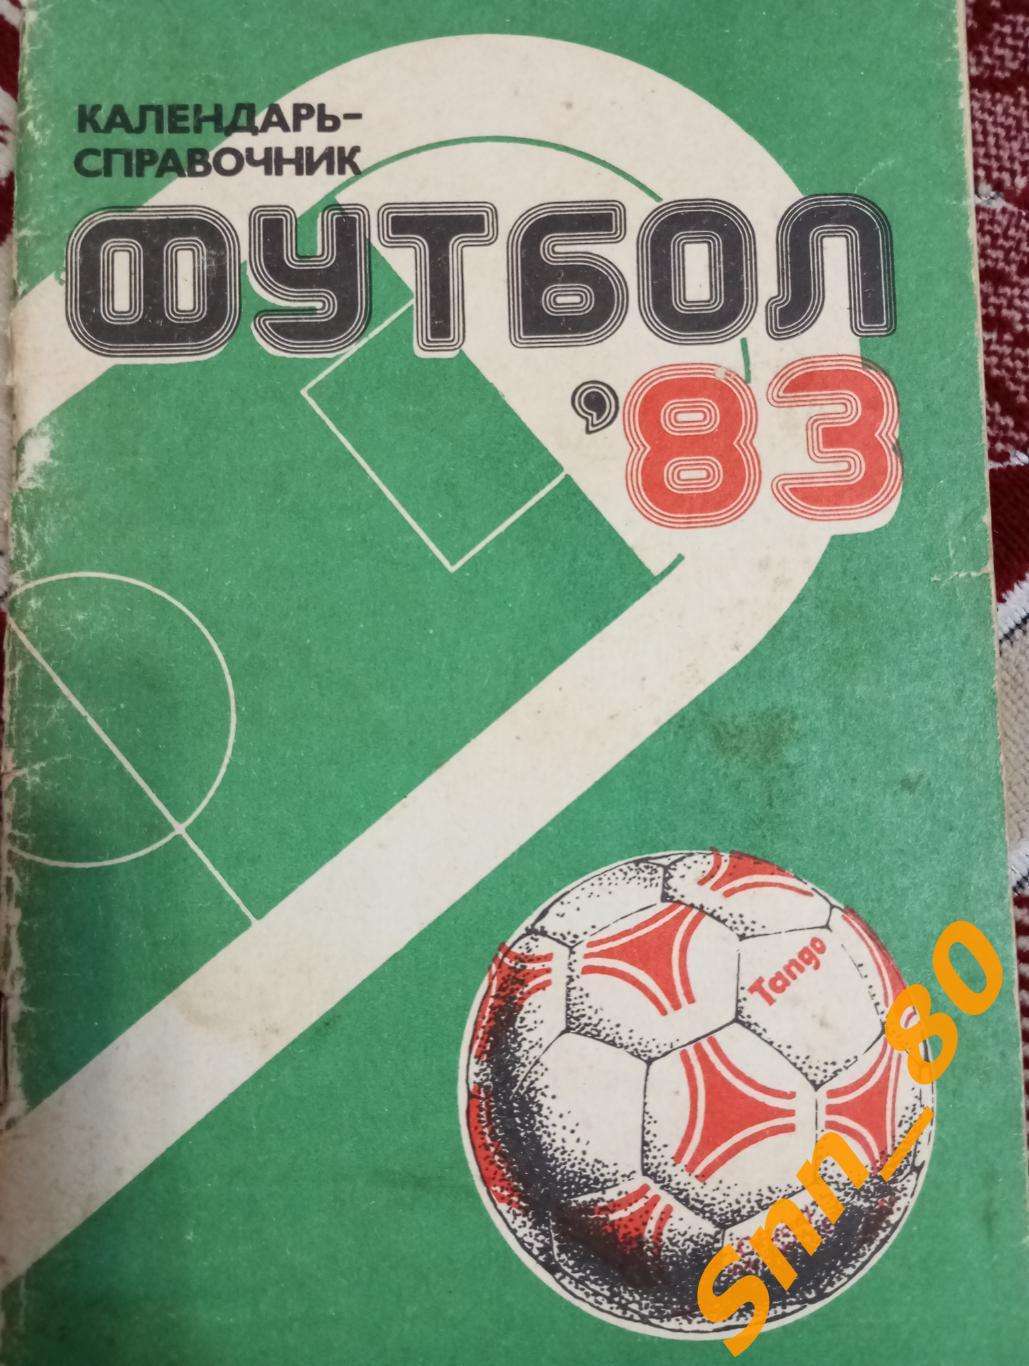 Футбол Календарь-справочник Харьков 1983